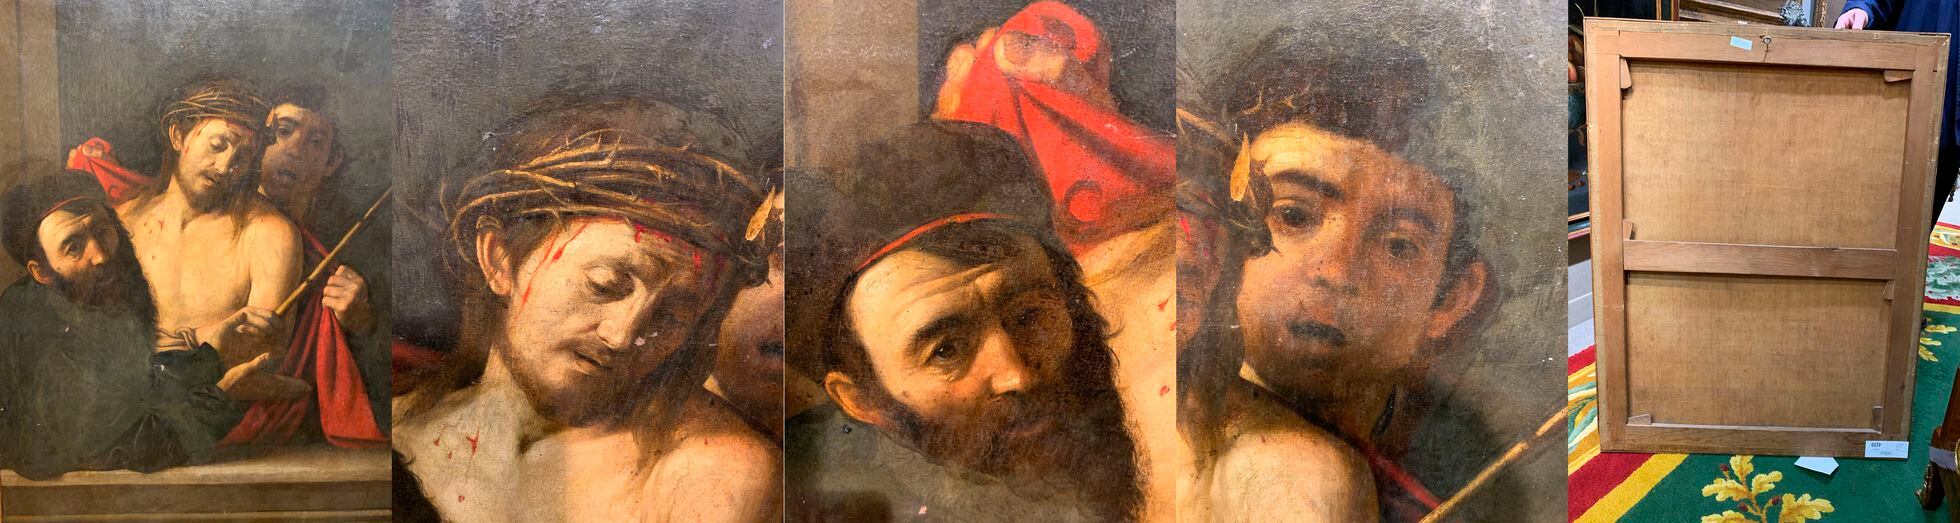 El posible eccehomo de Caravaggio que iba a subastarse en Ansorena. 